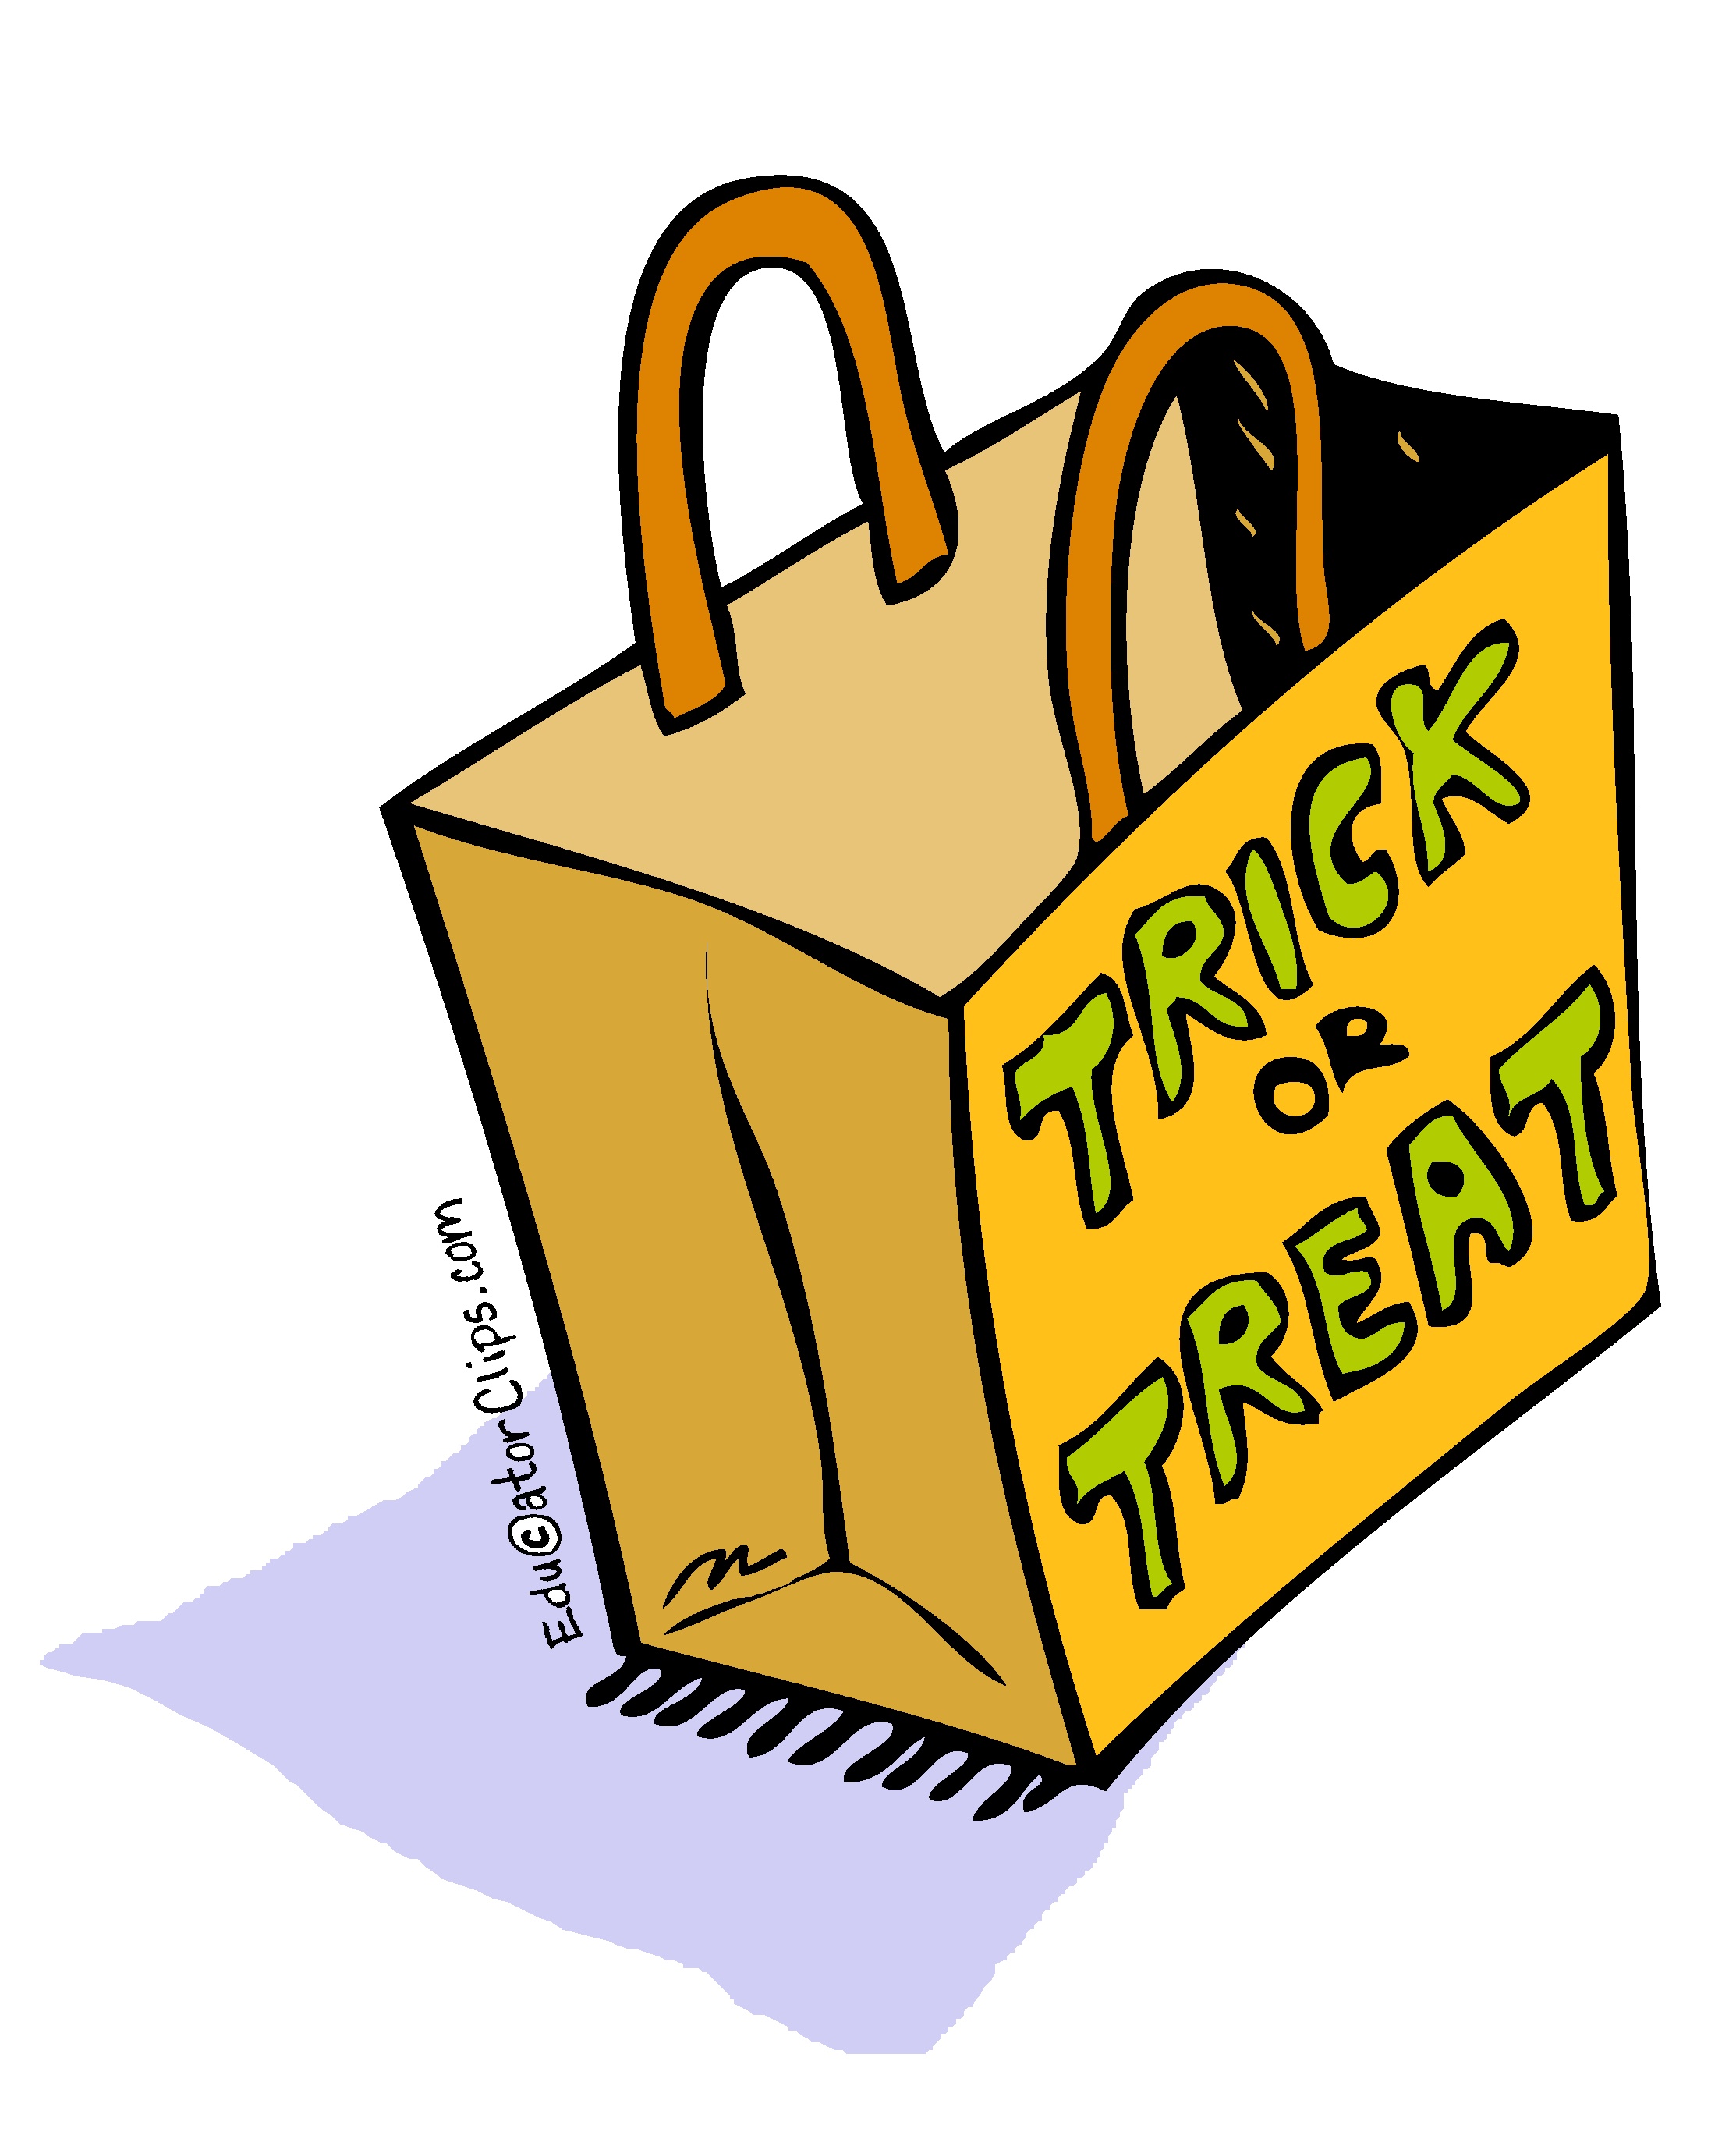 trick or treat bag